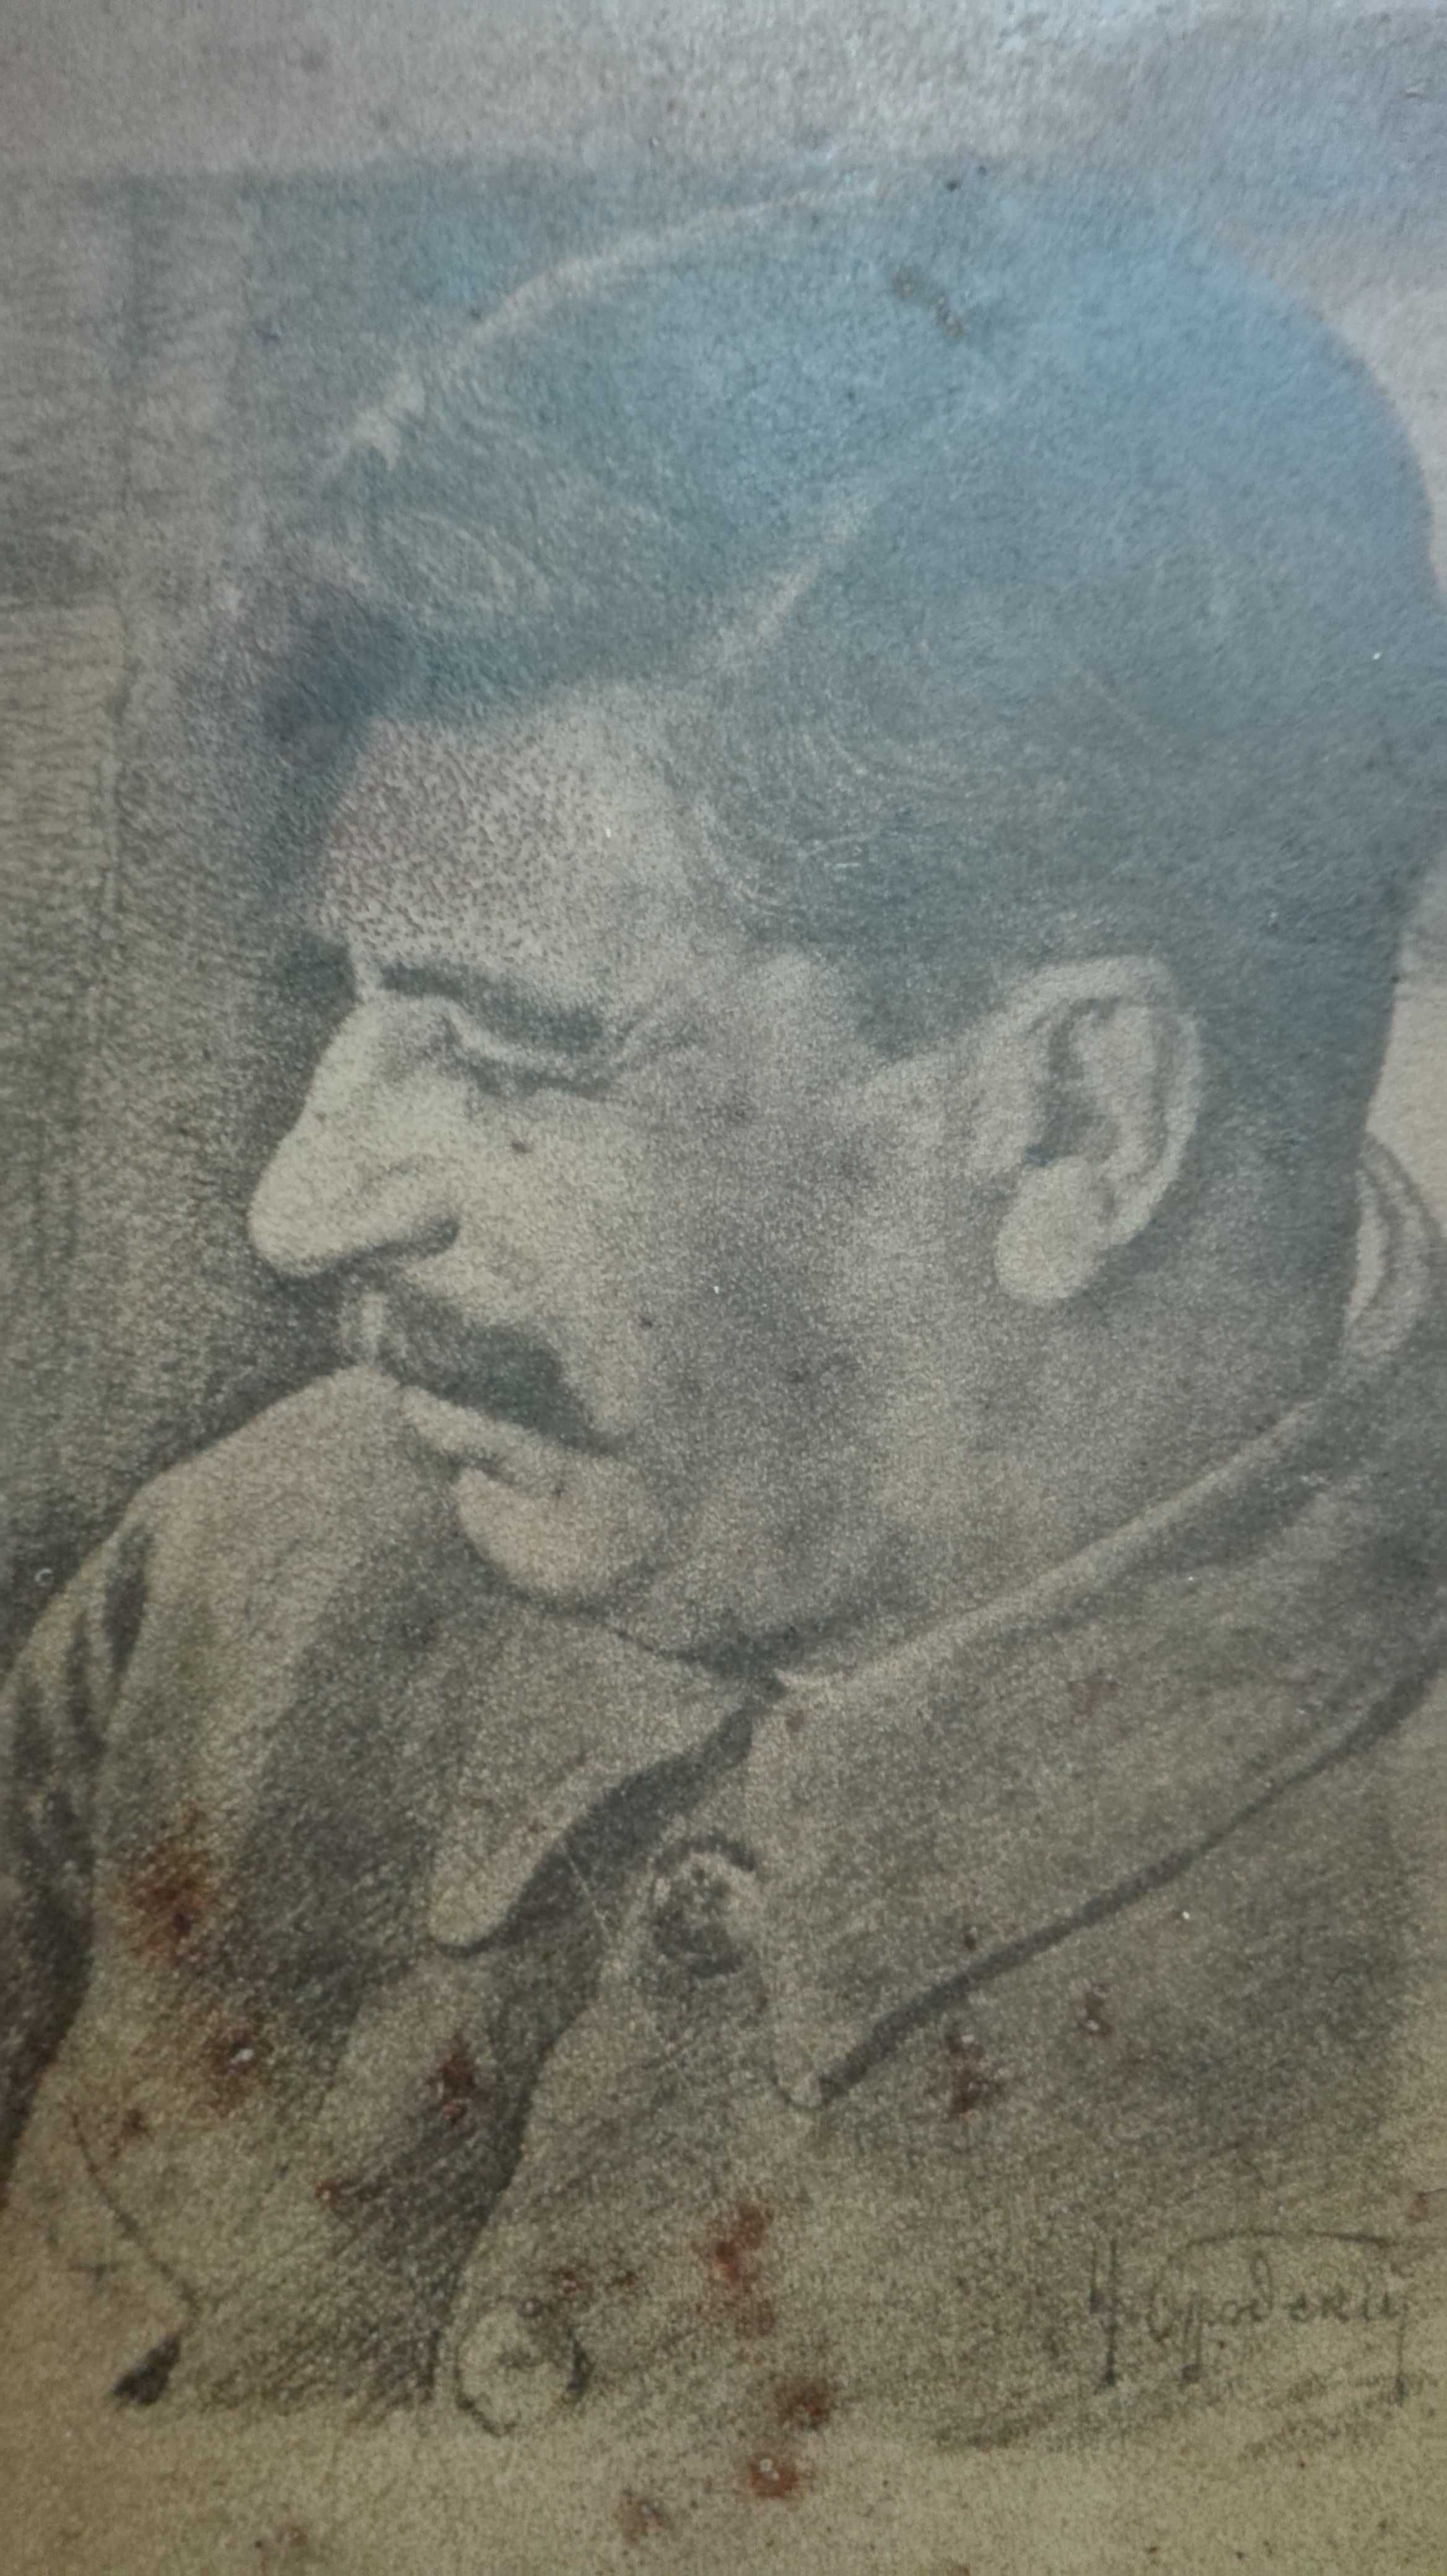 Картина И.Бродского Иосиф Сталин на металле металлопечать до 1953года